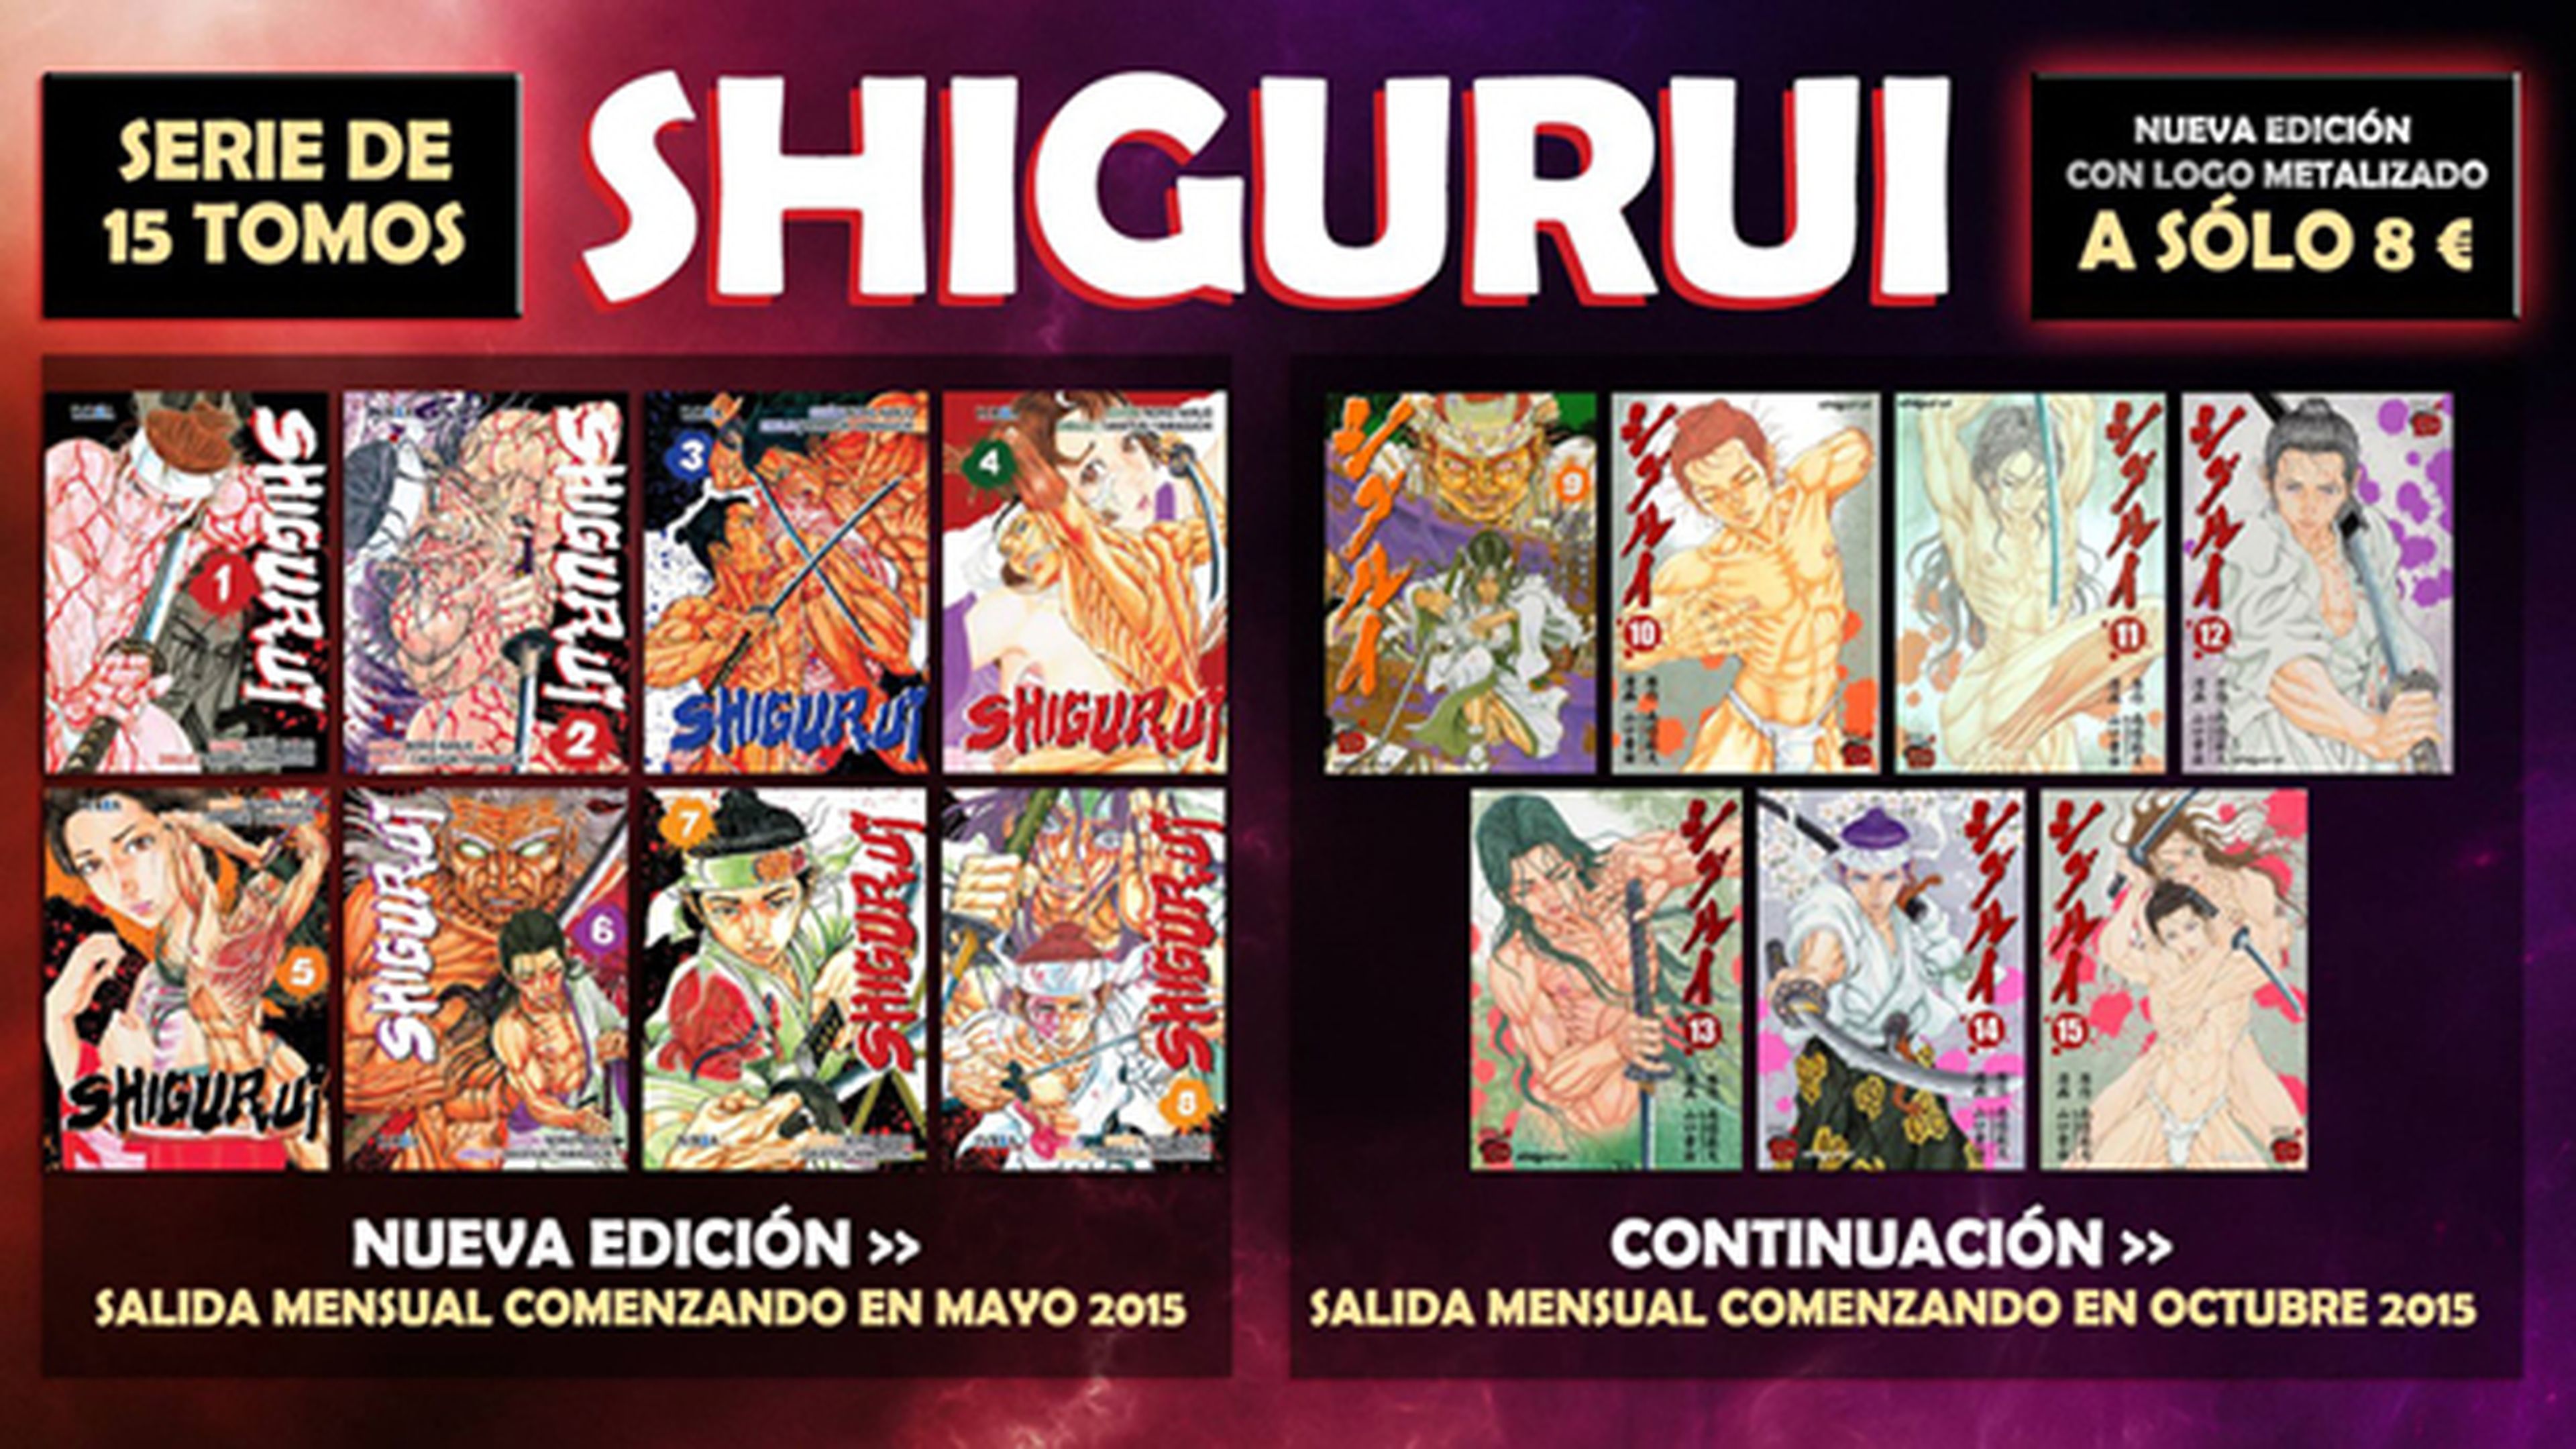 Shigurui se edita al completo en castellano